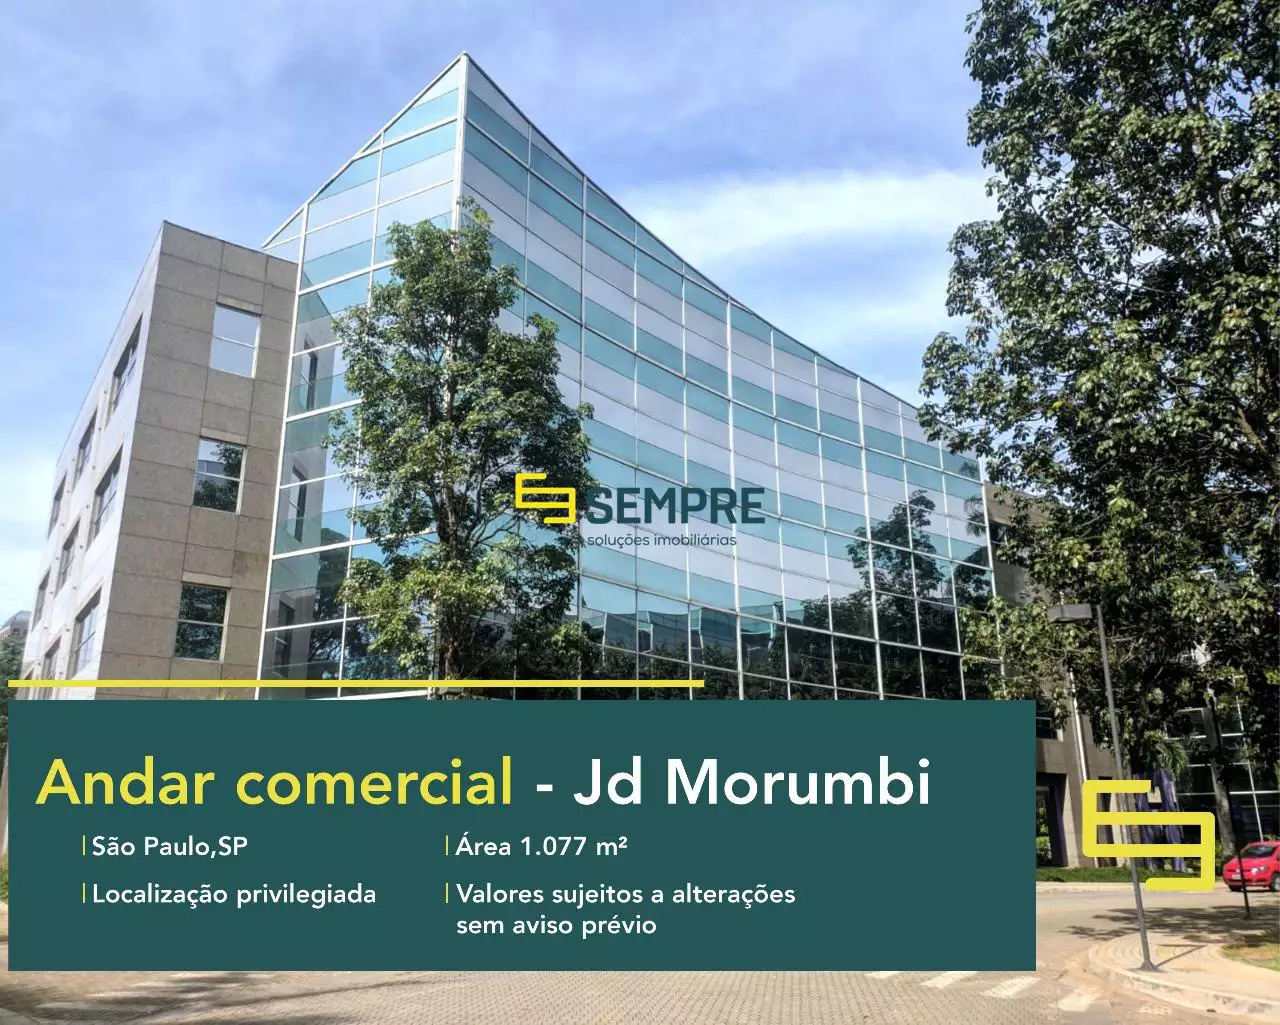 Andar comercial no Jardim Morumbi para locação em São Paulo, em excelente localização. O ponto comercial conta com área de 1.077 m².